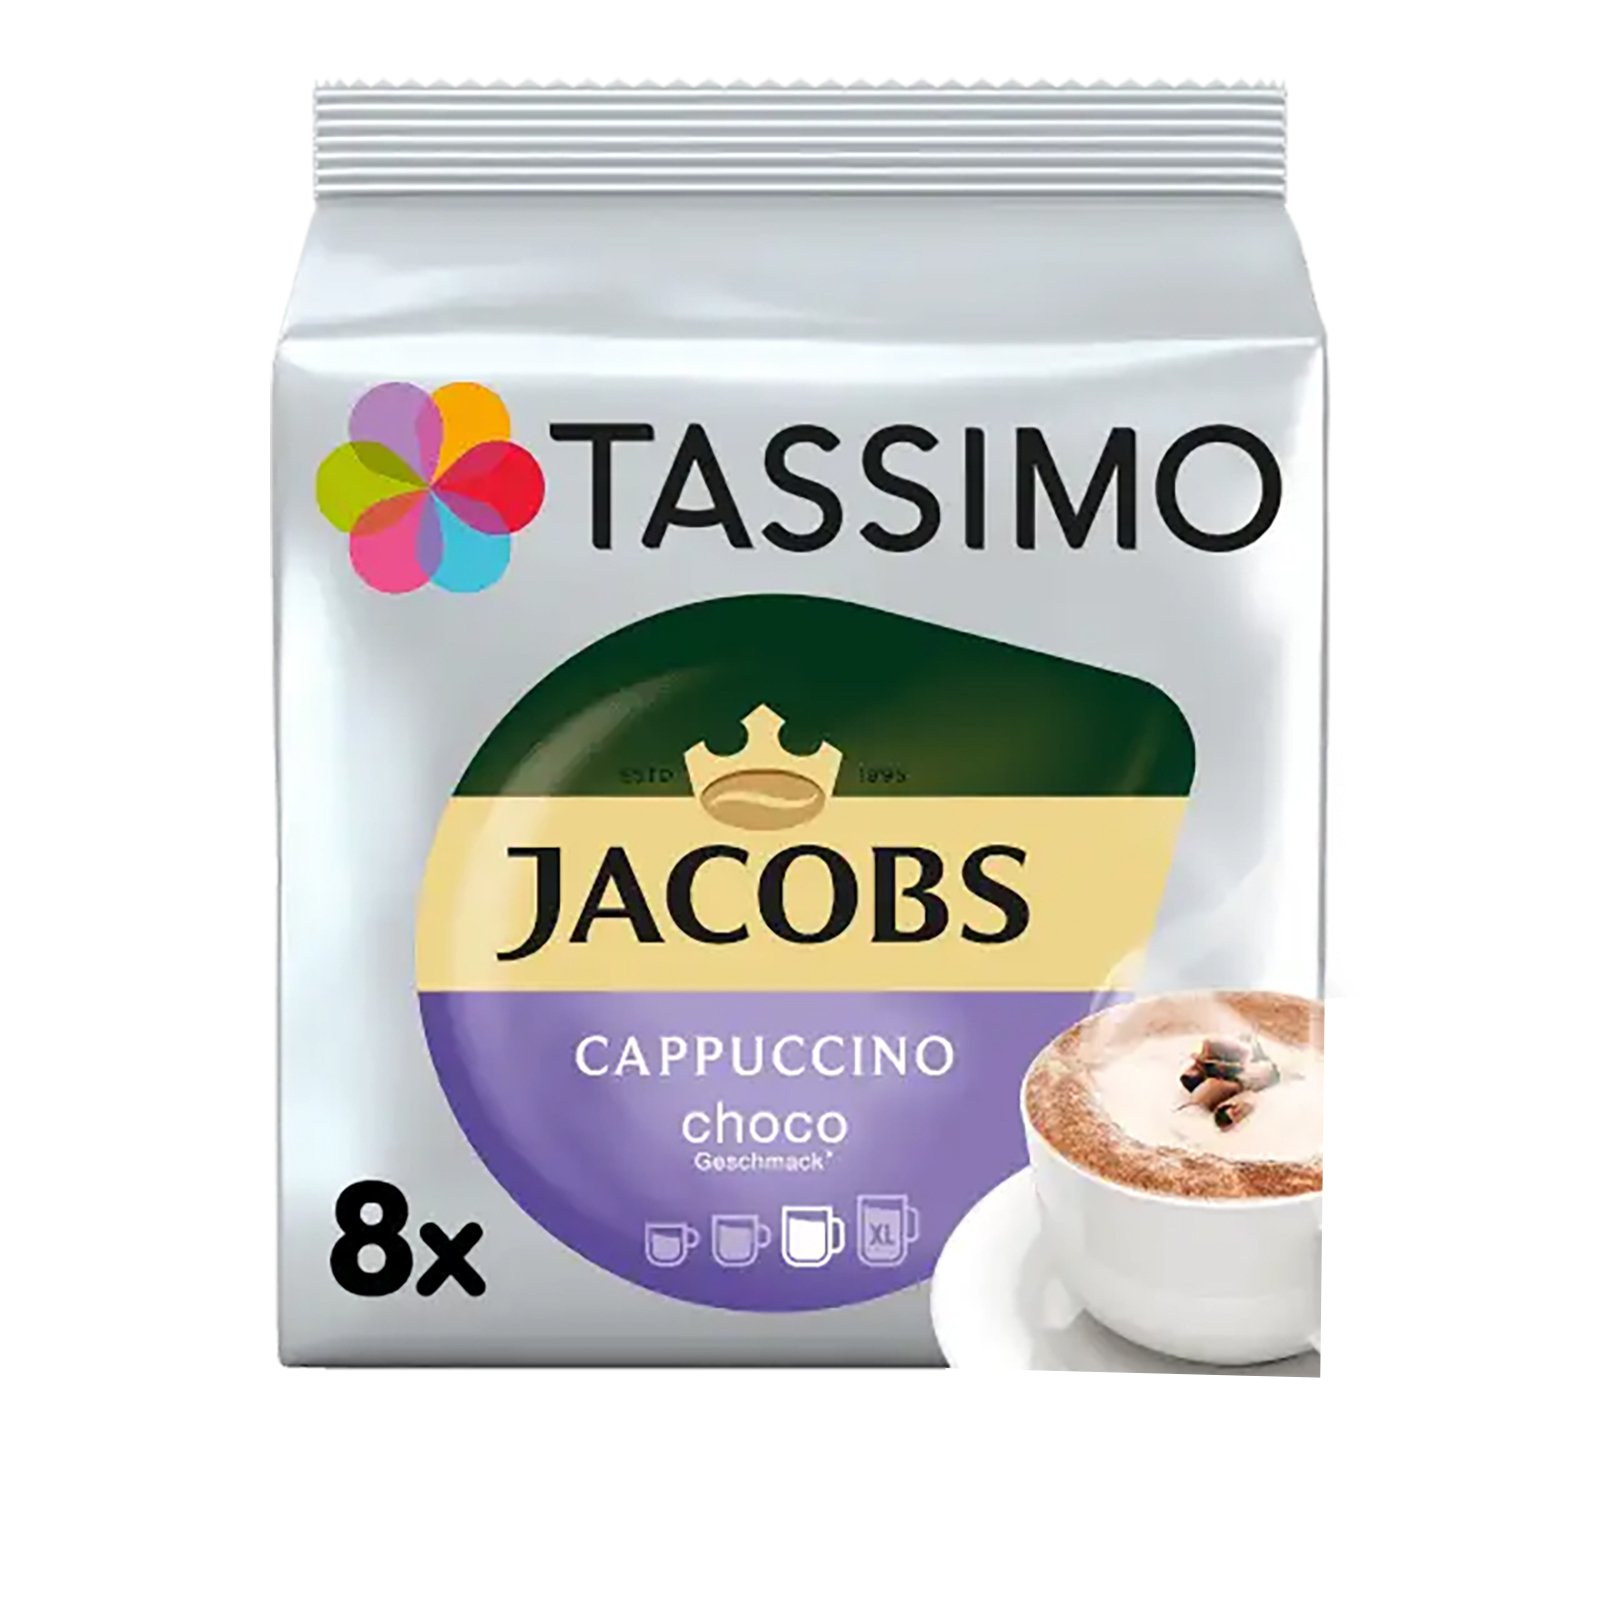 Capsule ciocolata calda, Jacobs Tassimo Milka Orange, 8 bauturi x 225 ml, 8  capsule